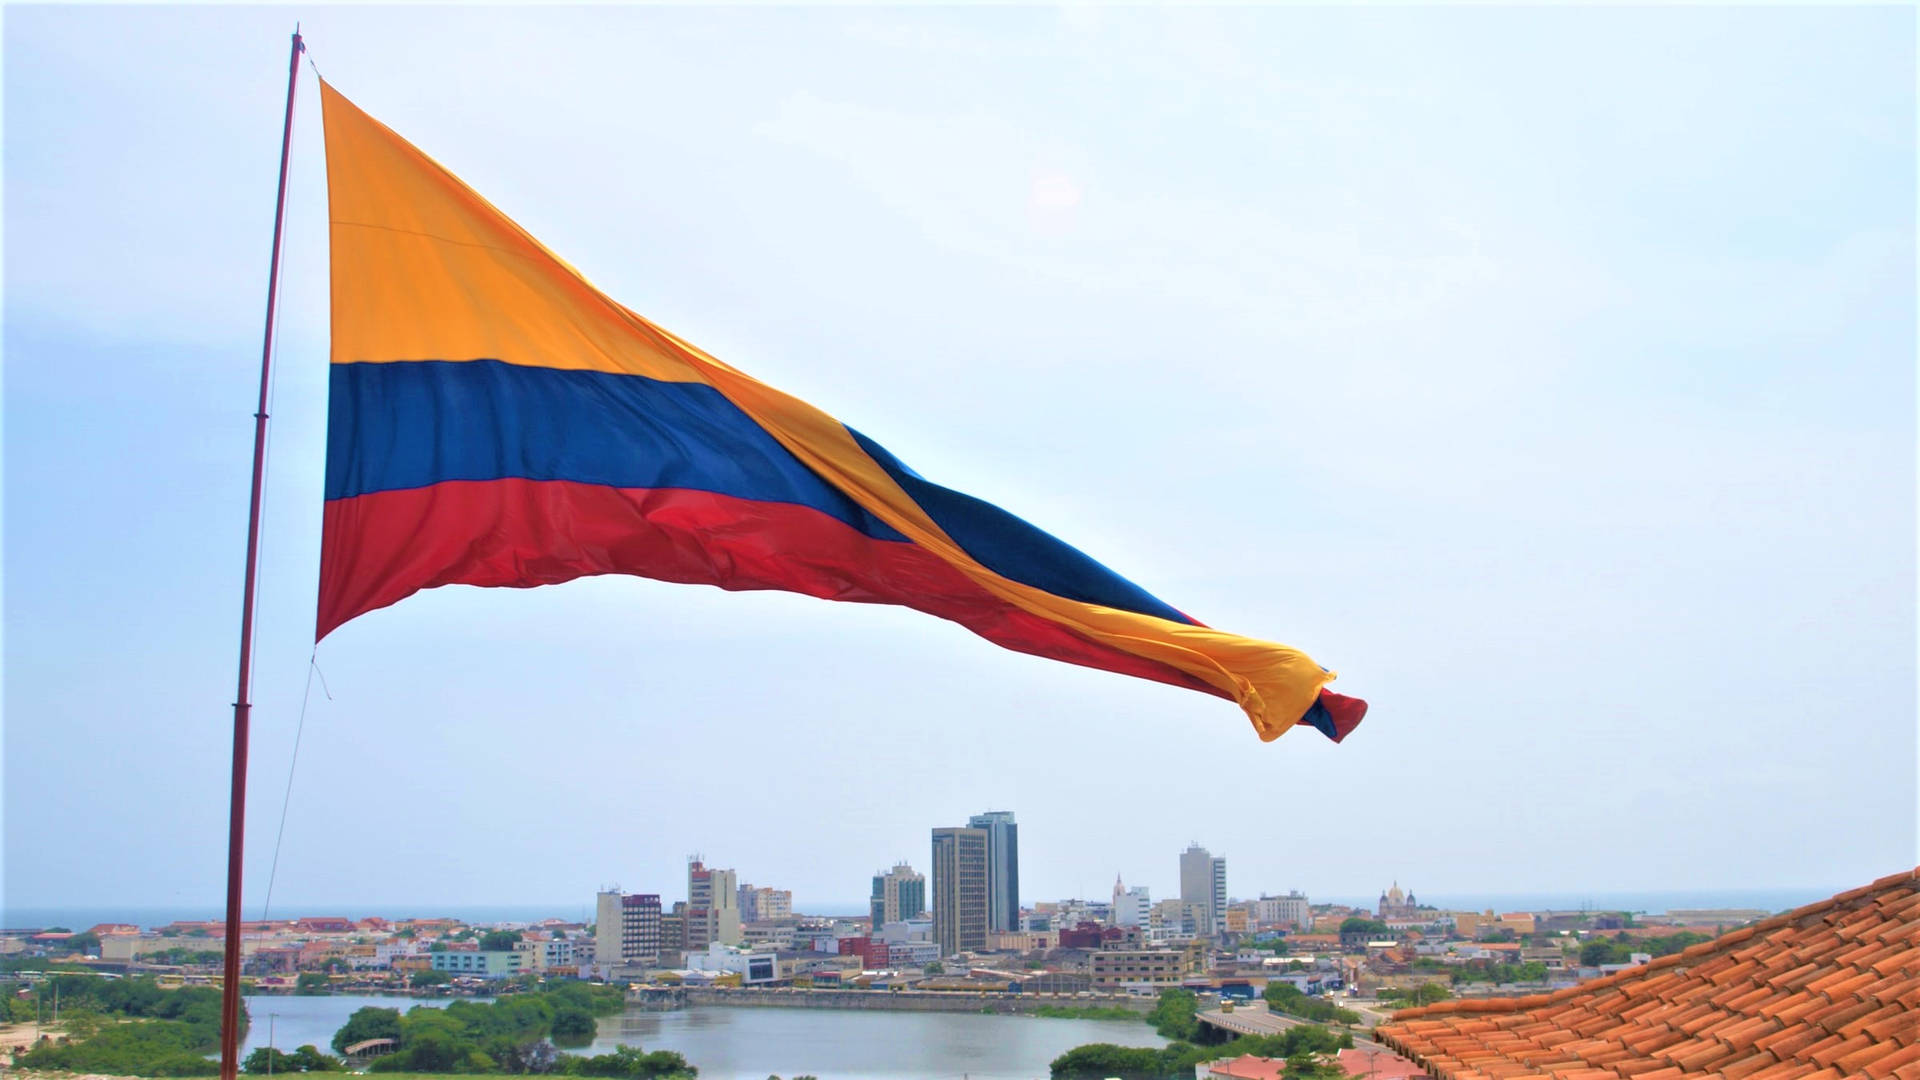 Kolumbianischeflagge In Der Stadt Wallpaper